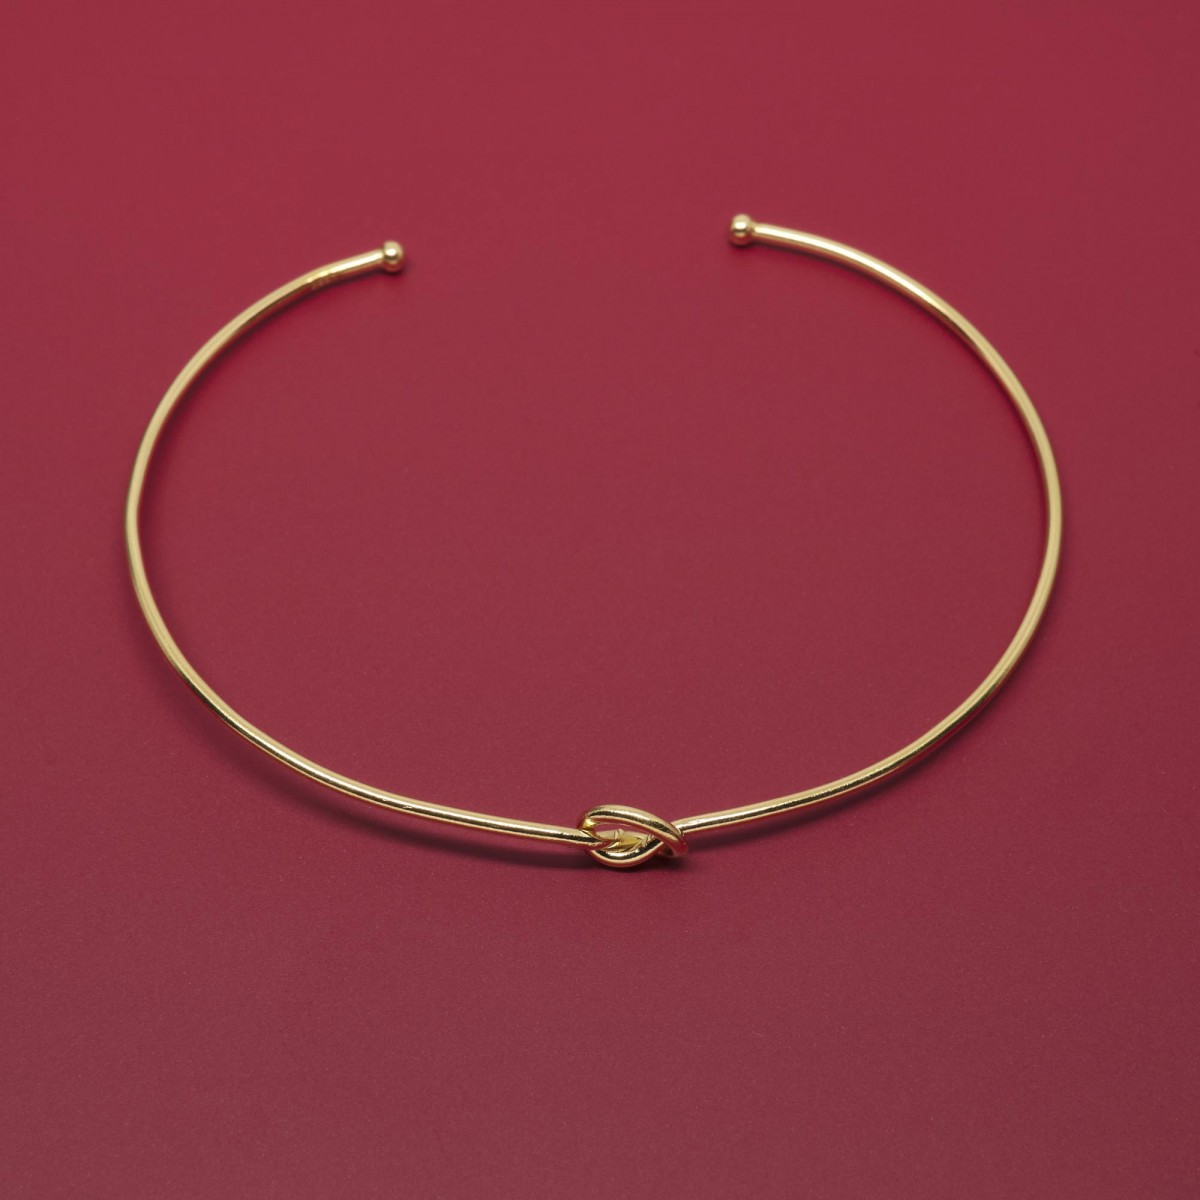 fejn jewelry - Armcuff 'knot'